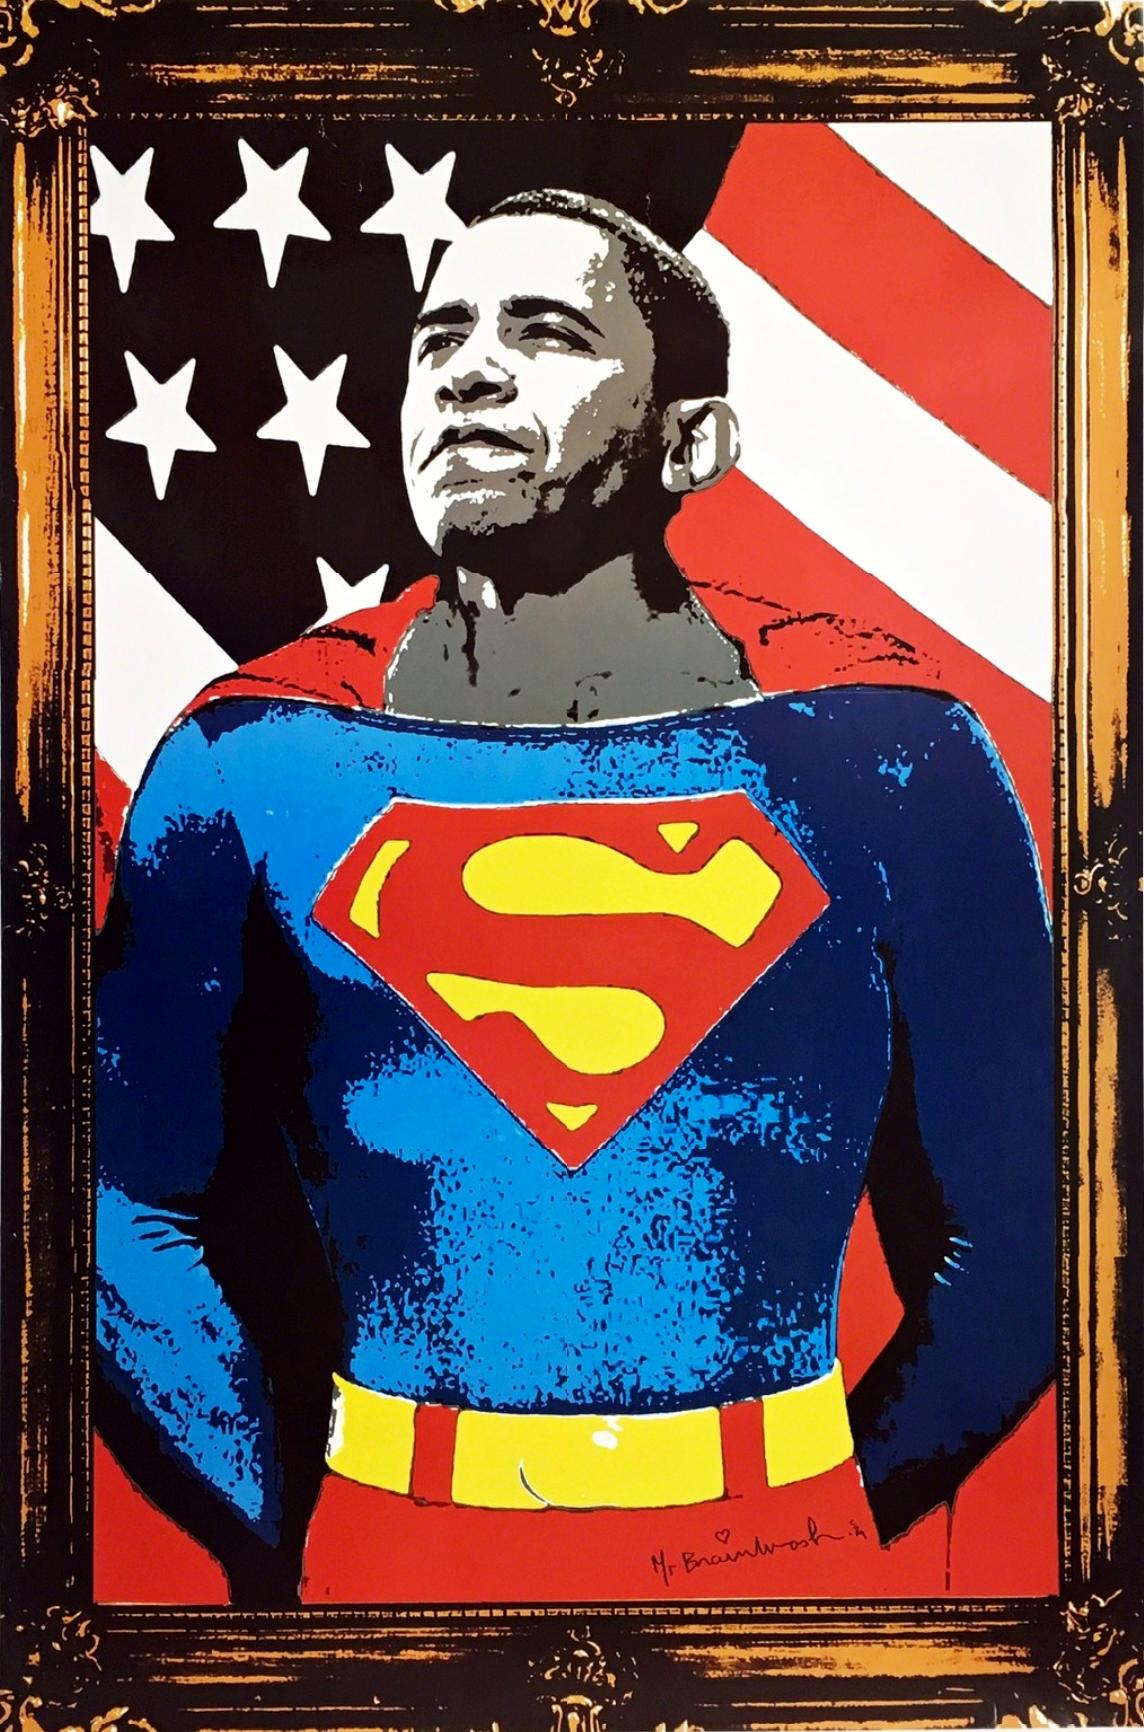 Obama Superman Lithographie offset sur papier, Commentaire culturel, signée - Print de Mr. Brainwash